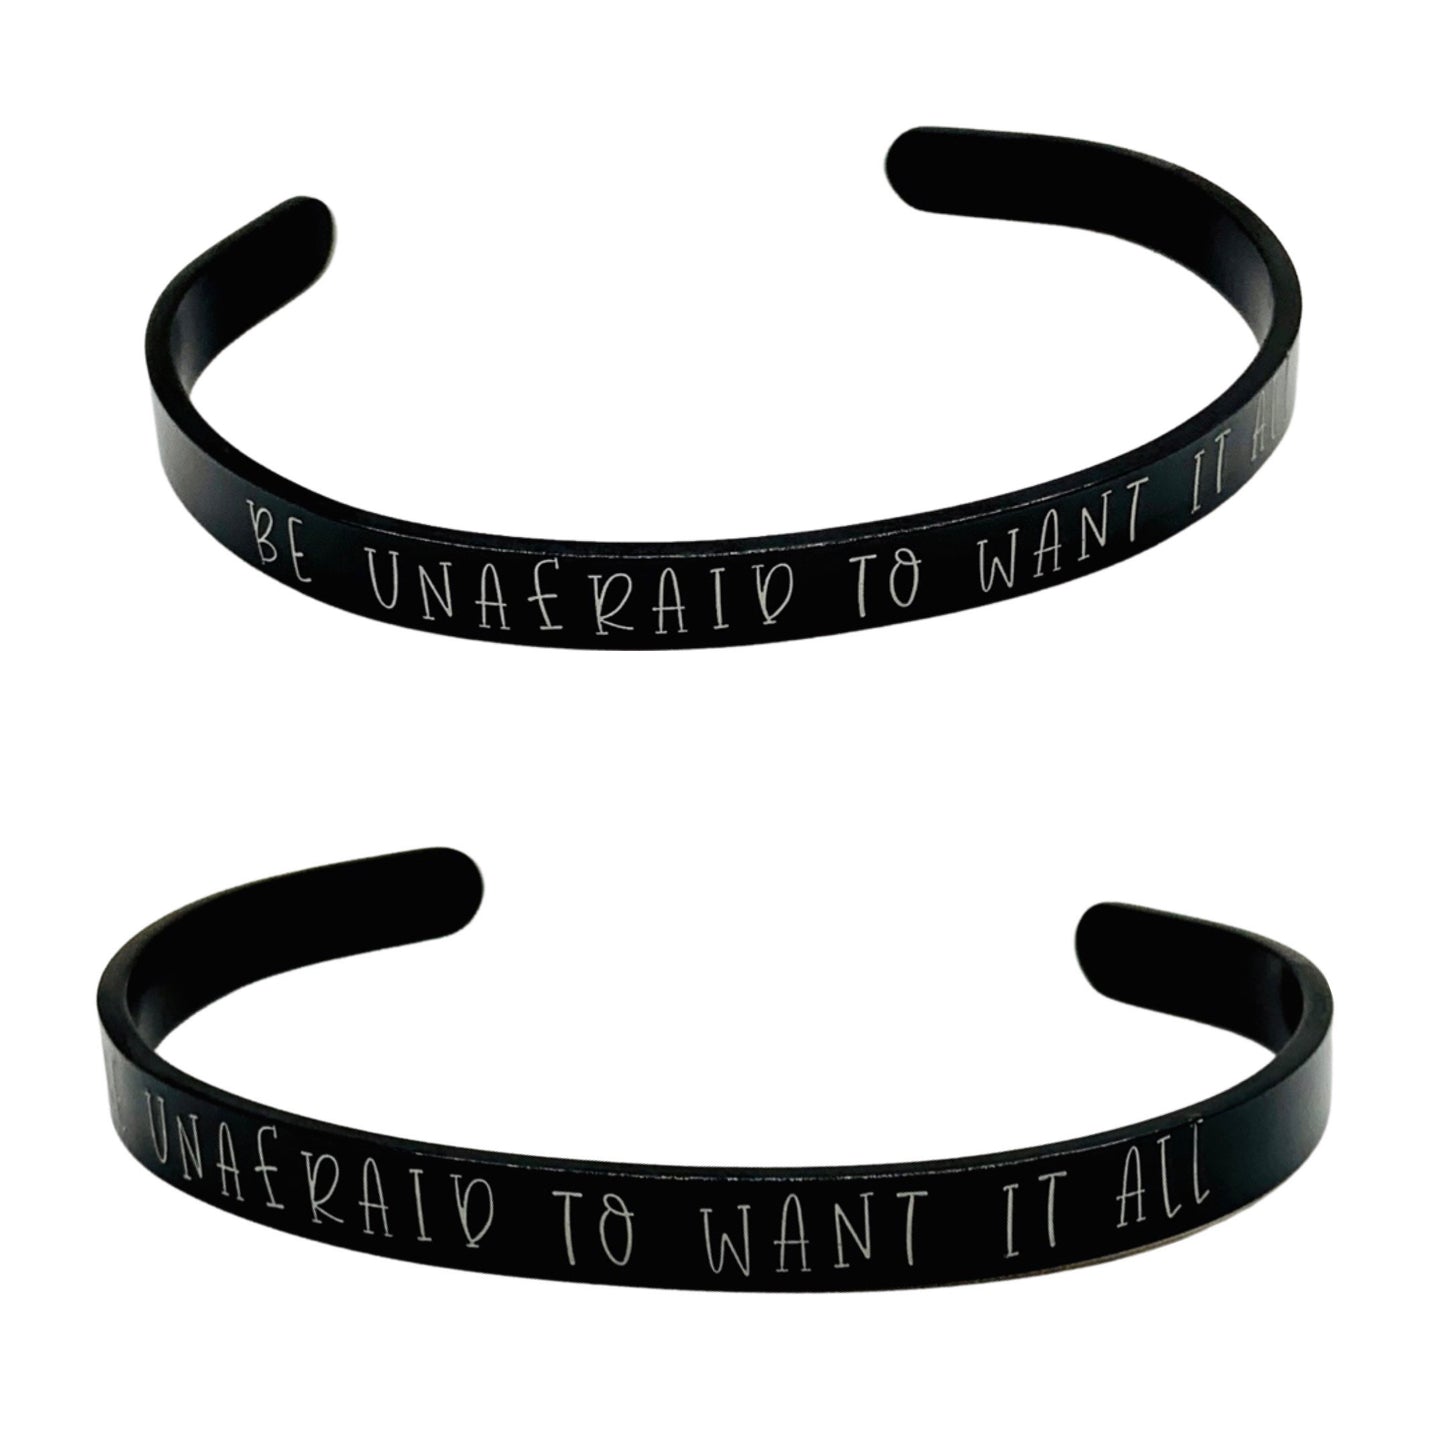 Be unafraid to want it all (Kennedy Ryan) - Cuff Bracelet